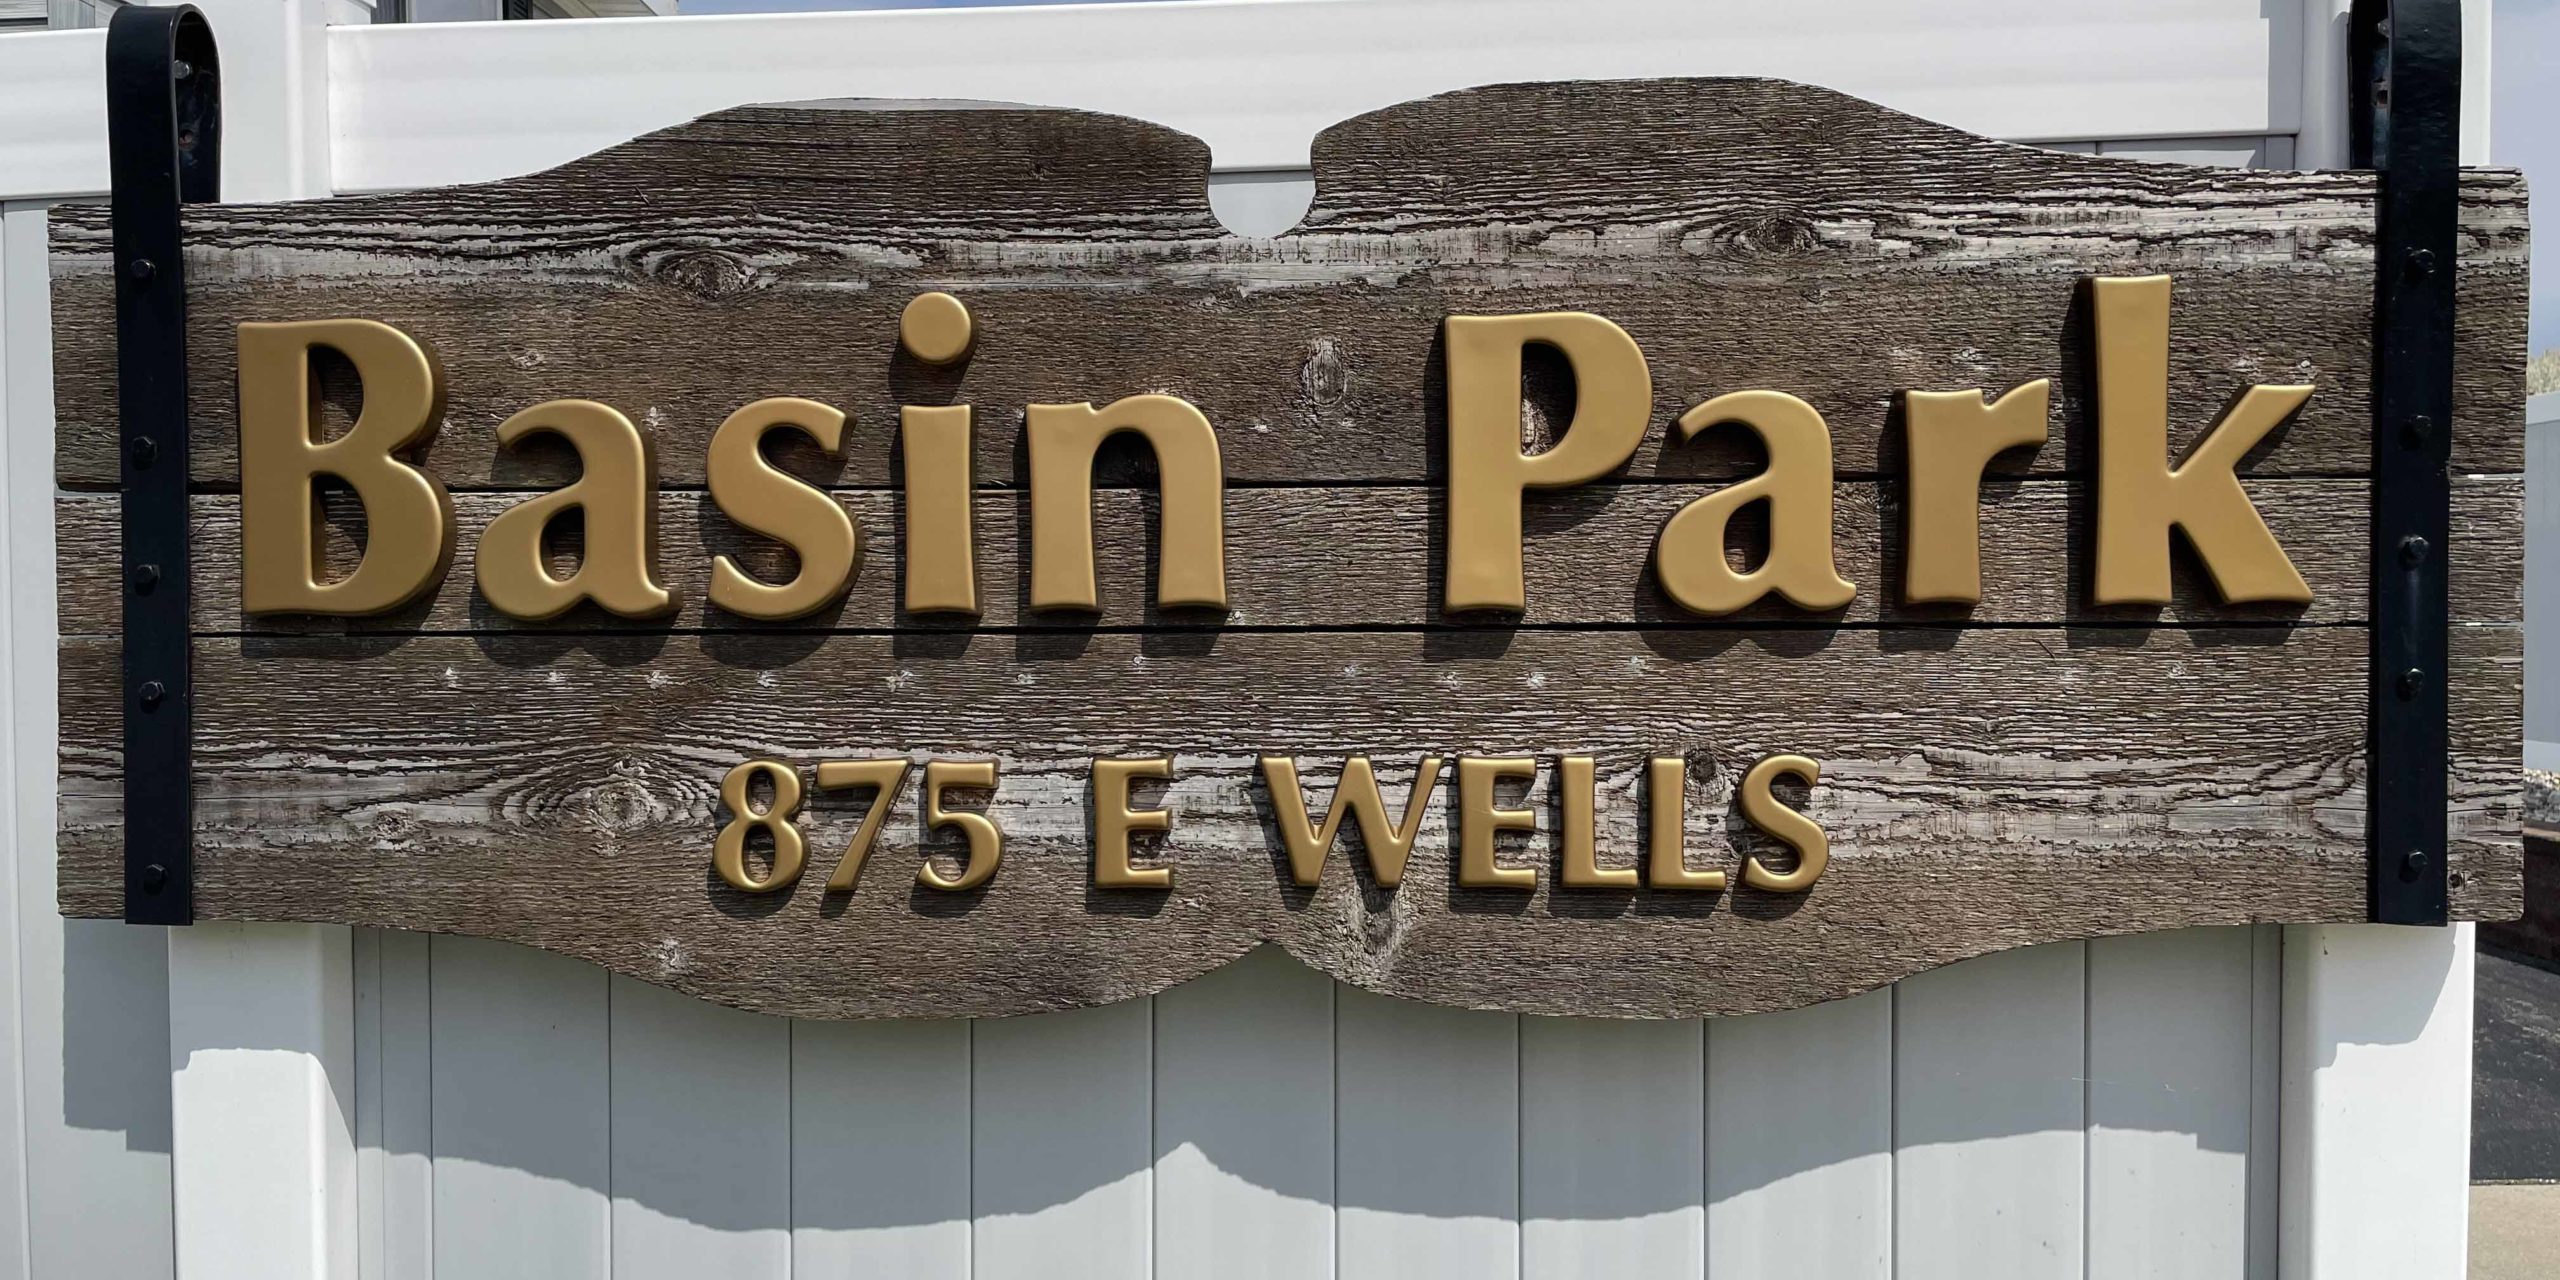 Basin Park